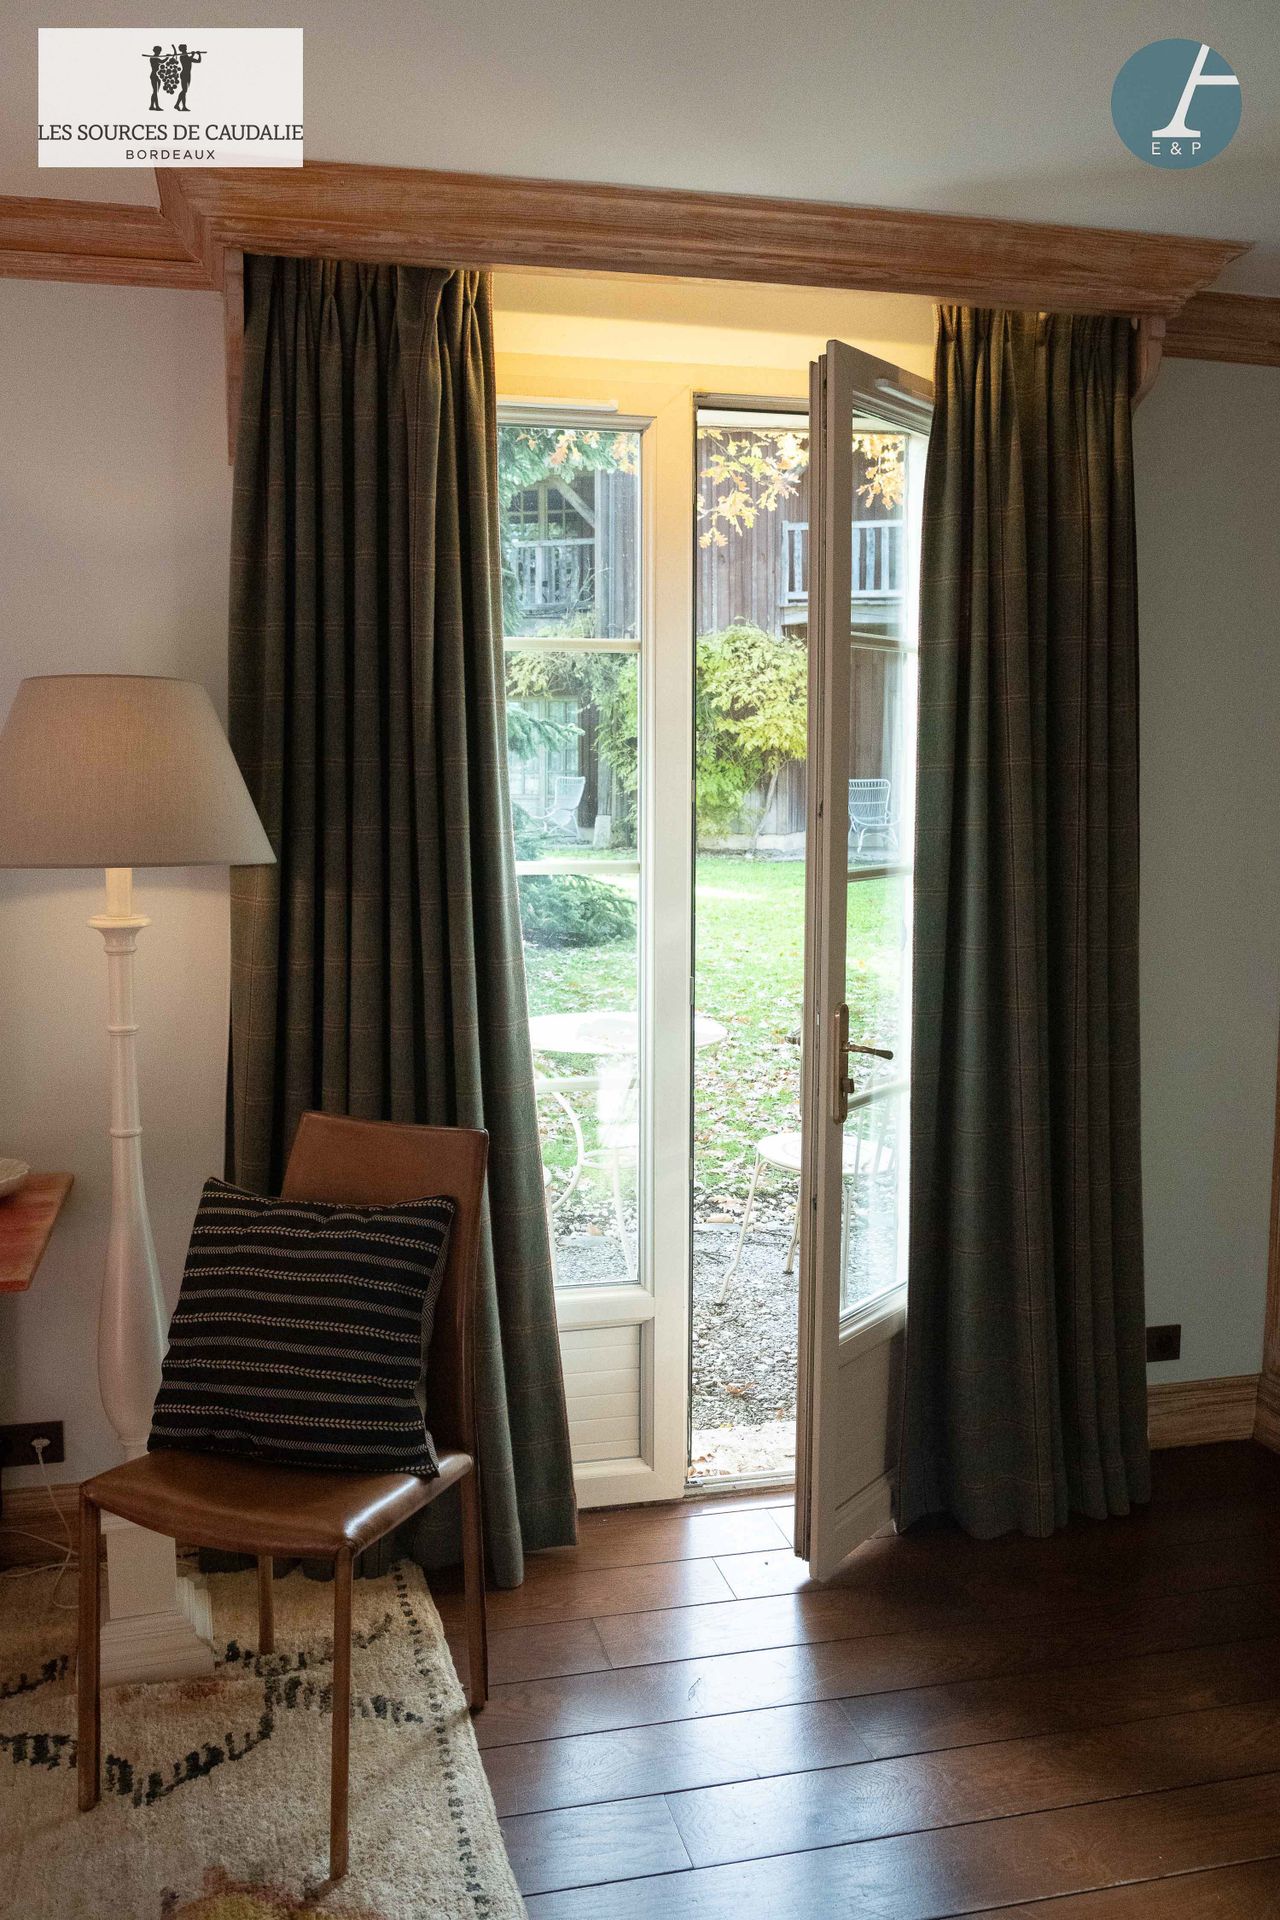 Null 源自Caudalie "Les Cépages"（Maison du Lièvre）的26号房间。
一对法兰绒类型的窗帘，灰色背景，灰色和红色格子。
&hellip;